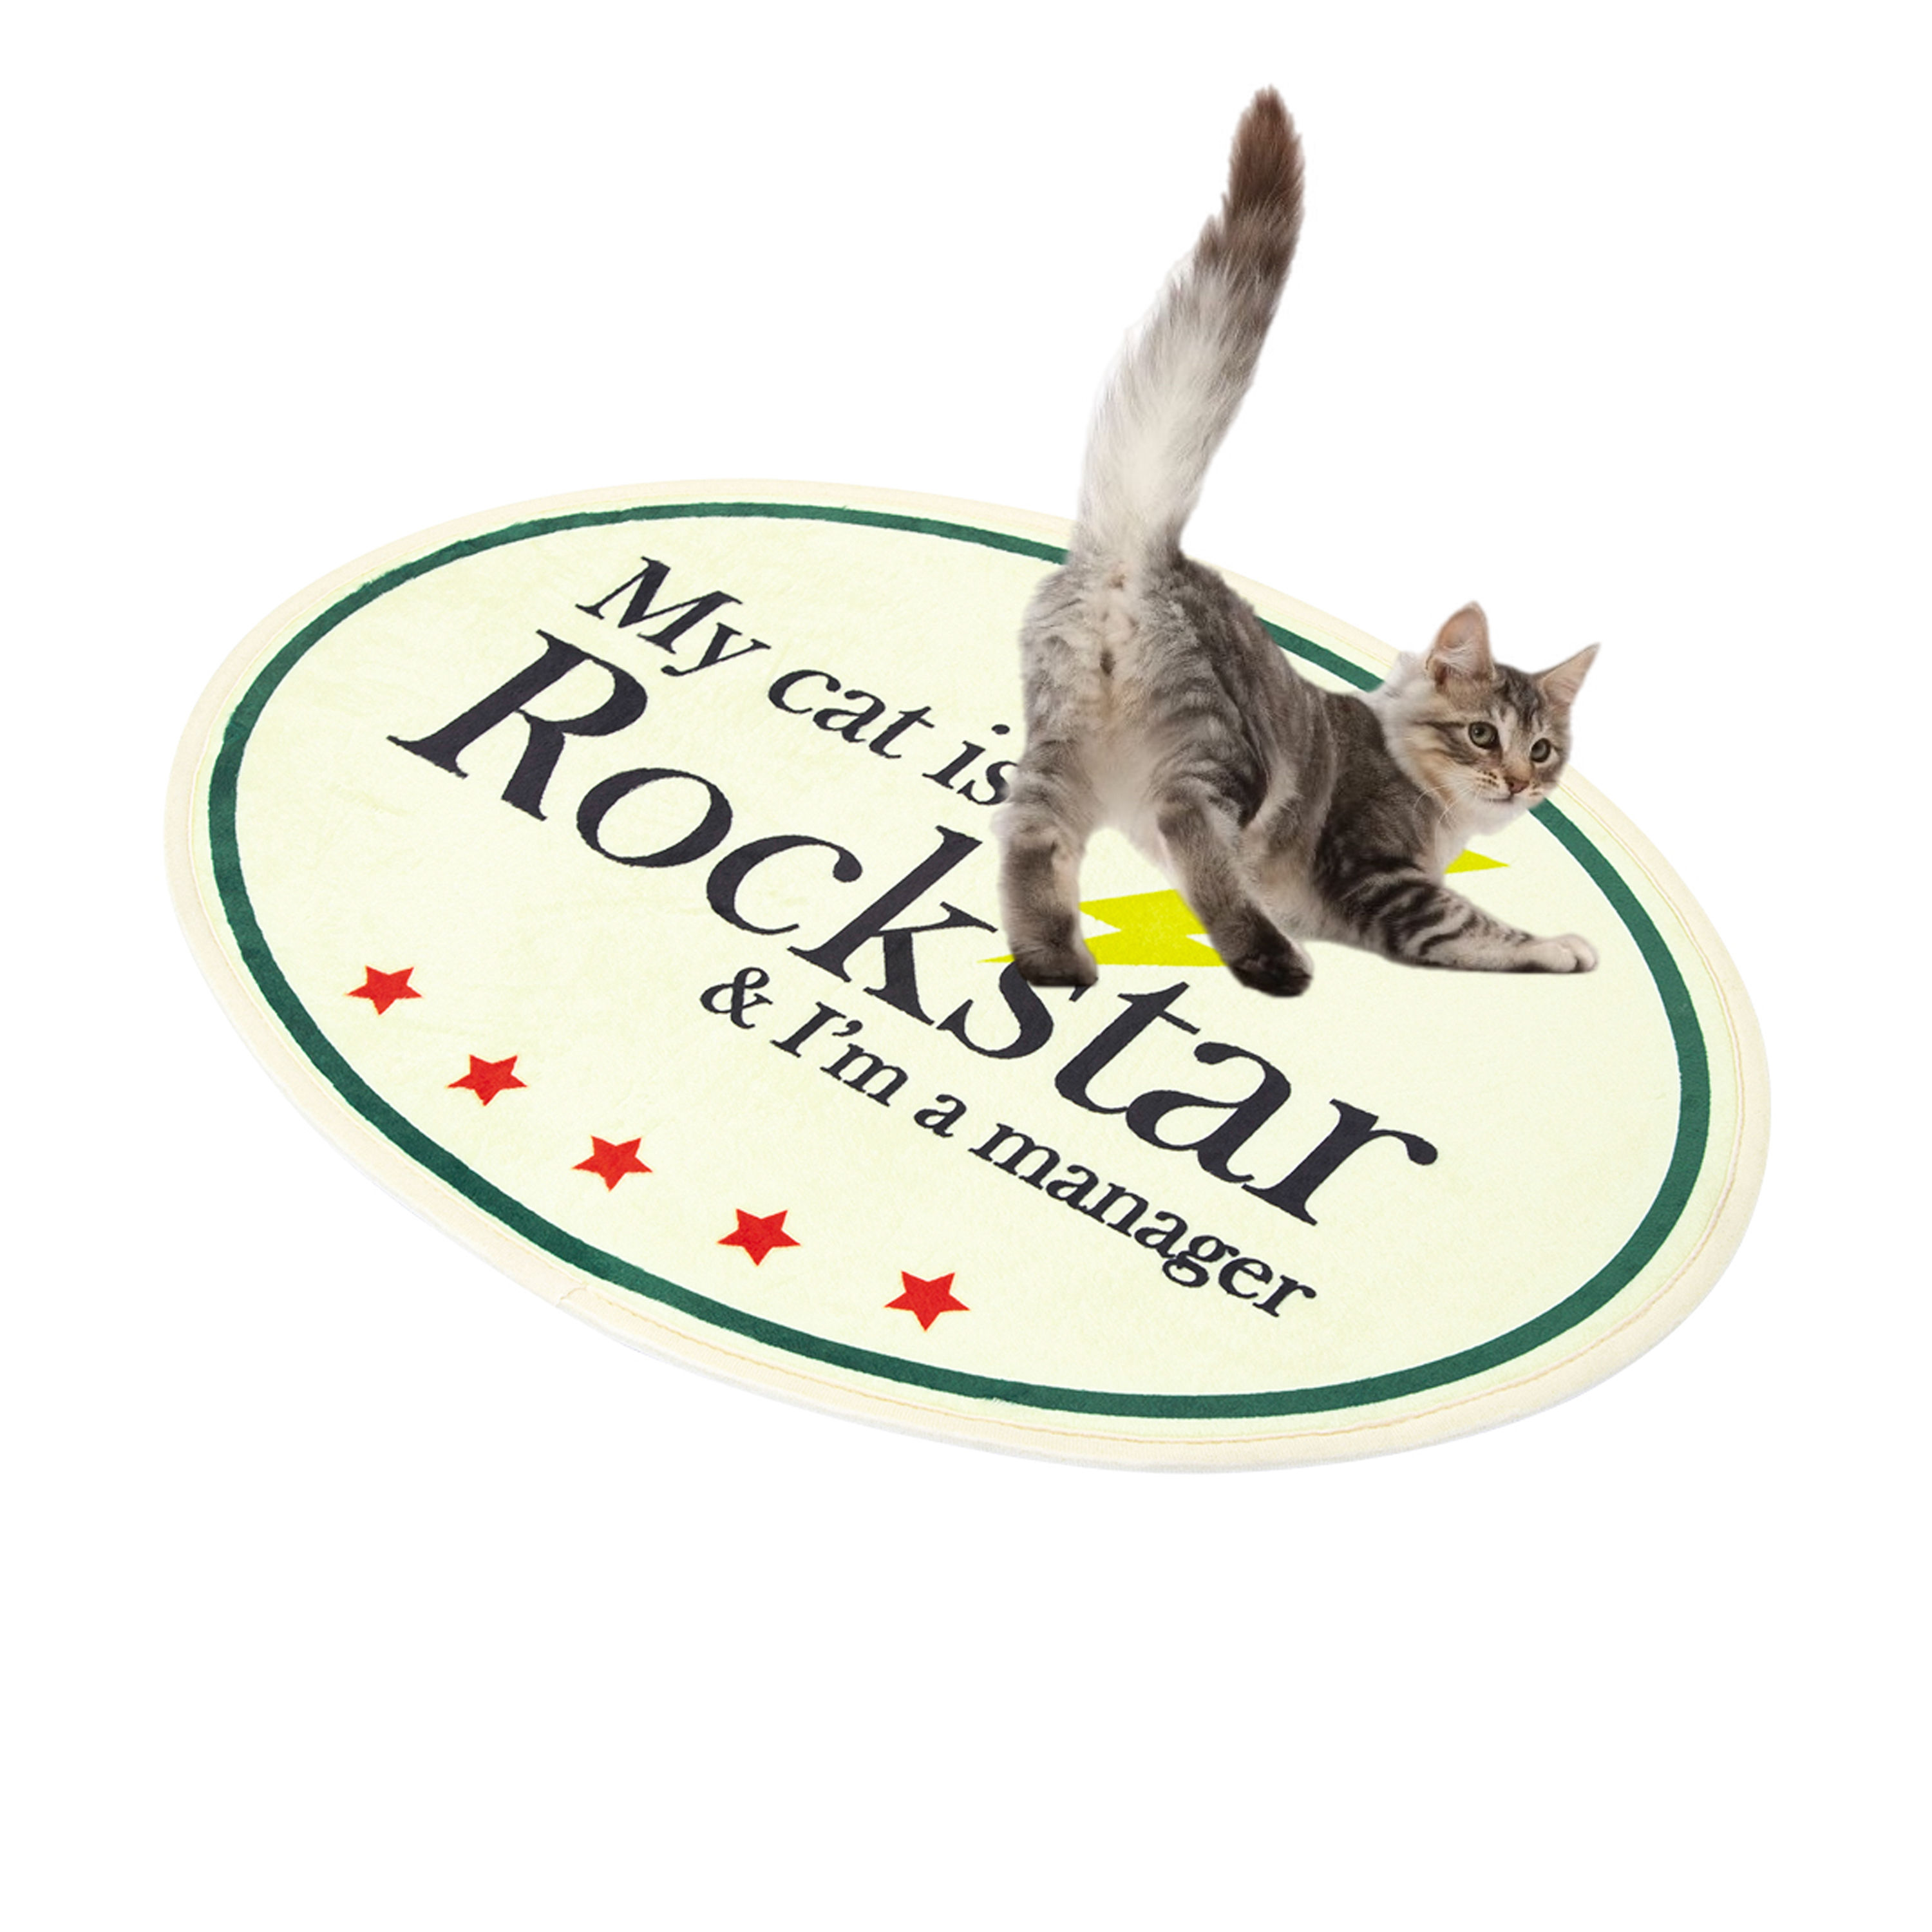 My cat is Rockstar Mini Rug (Ivory)